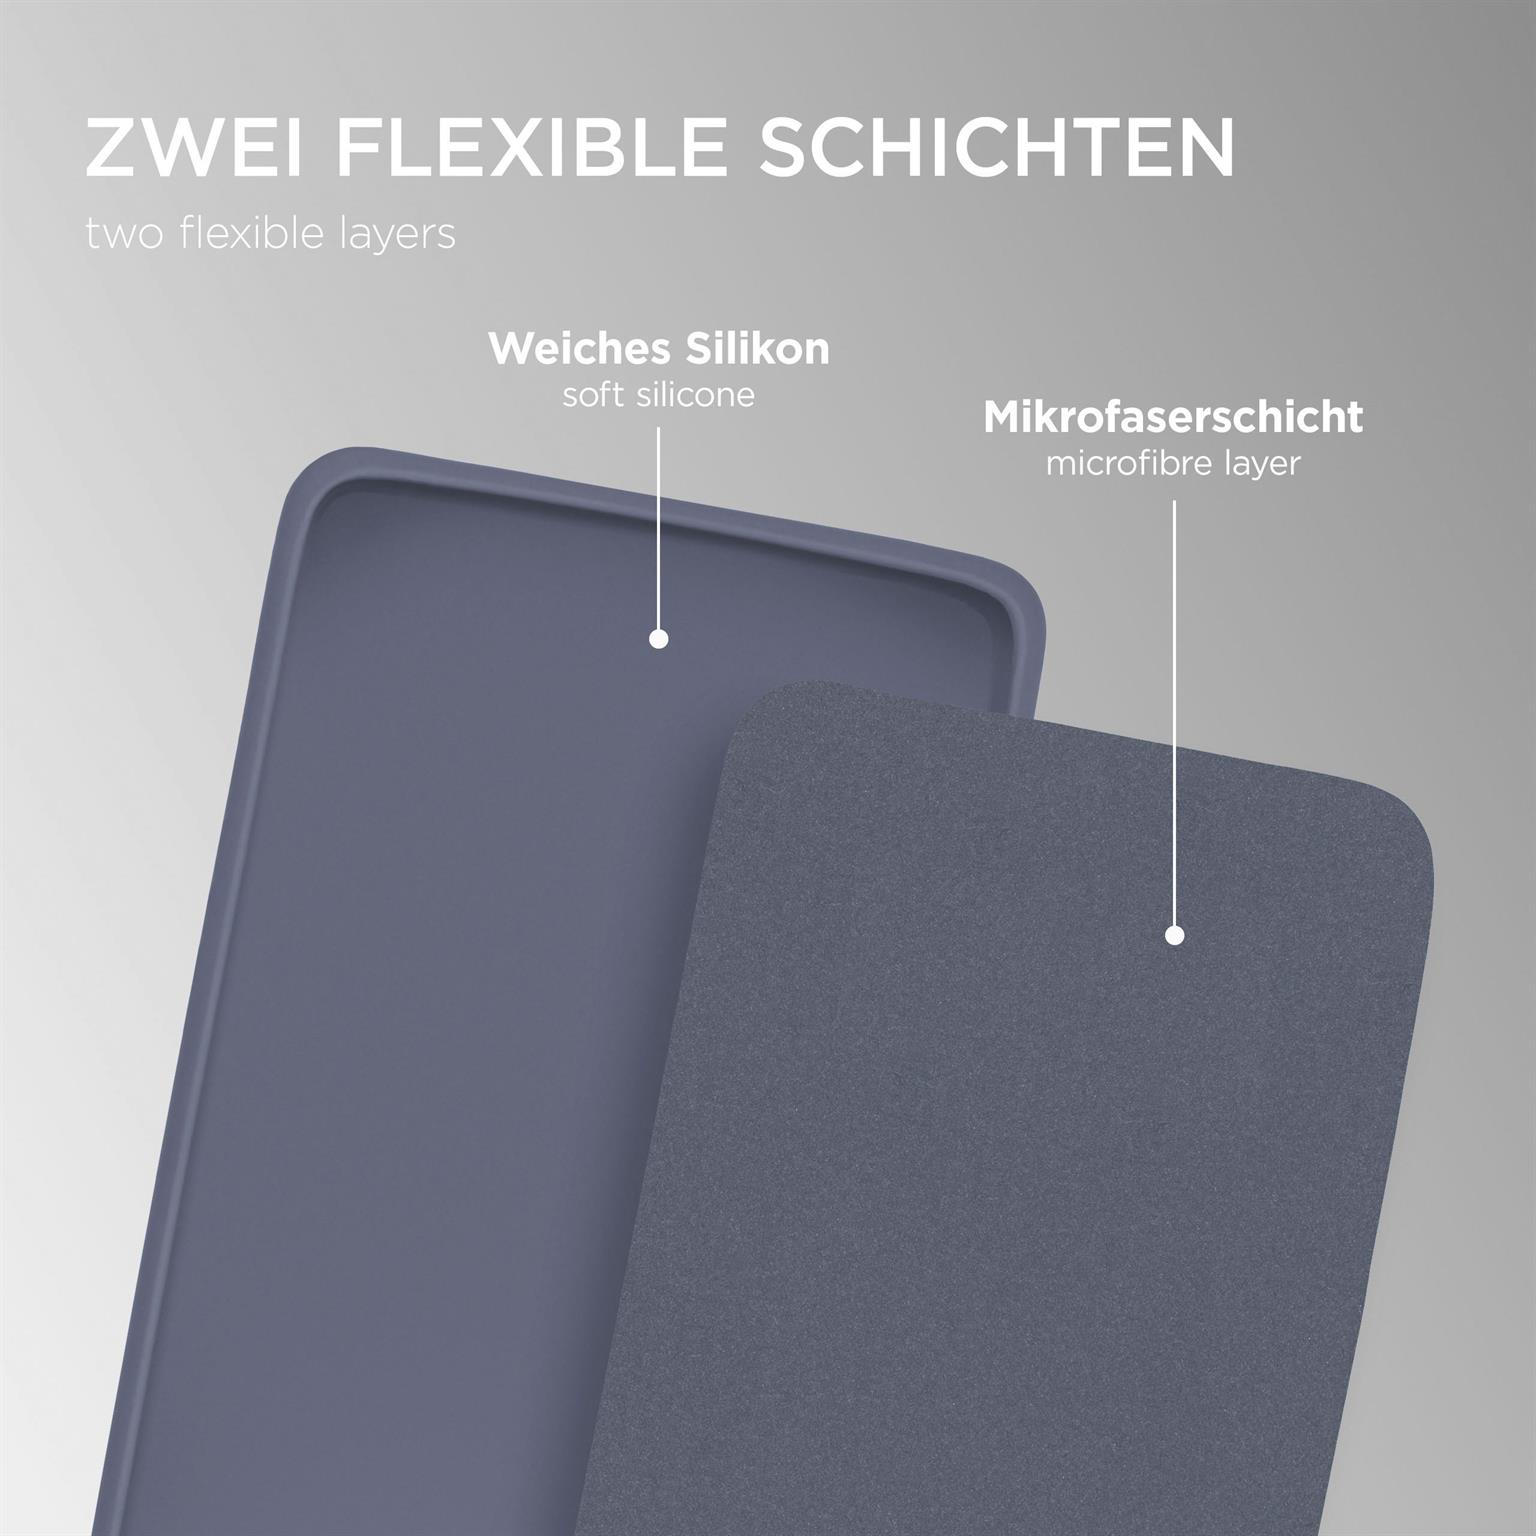 Lavendelgrau Backcover, Samsung, S20 Soft Galaxy FE, Case, ONEFLOW